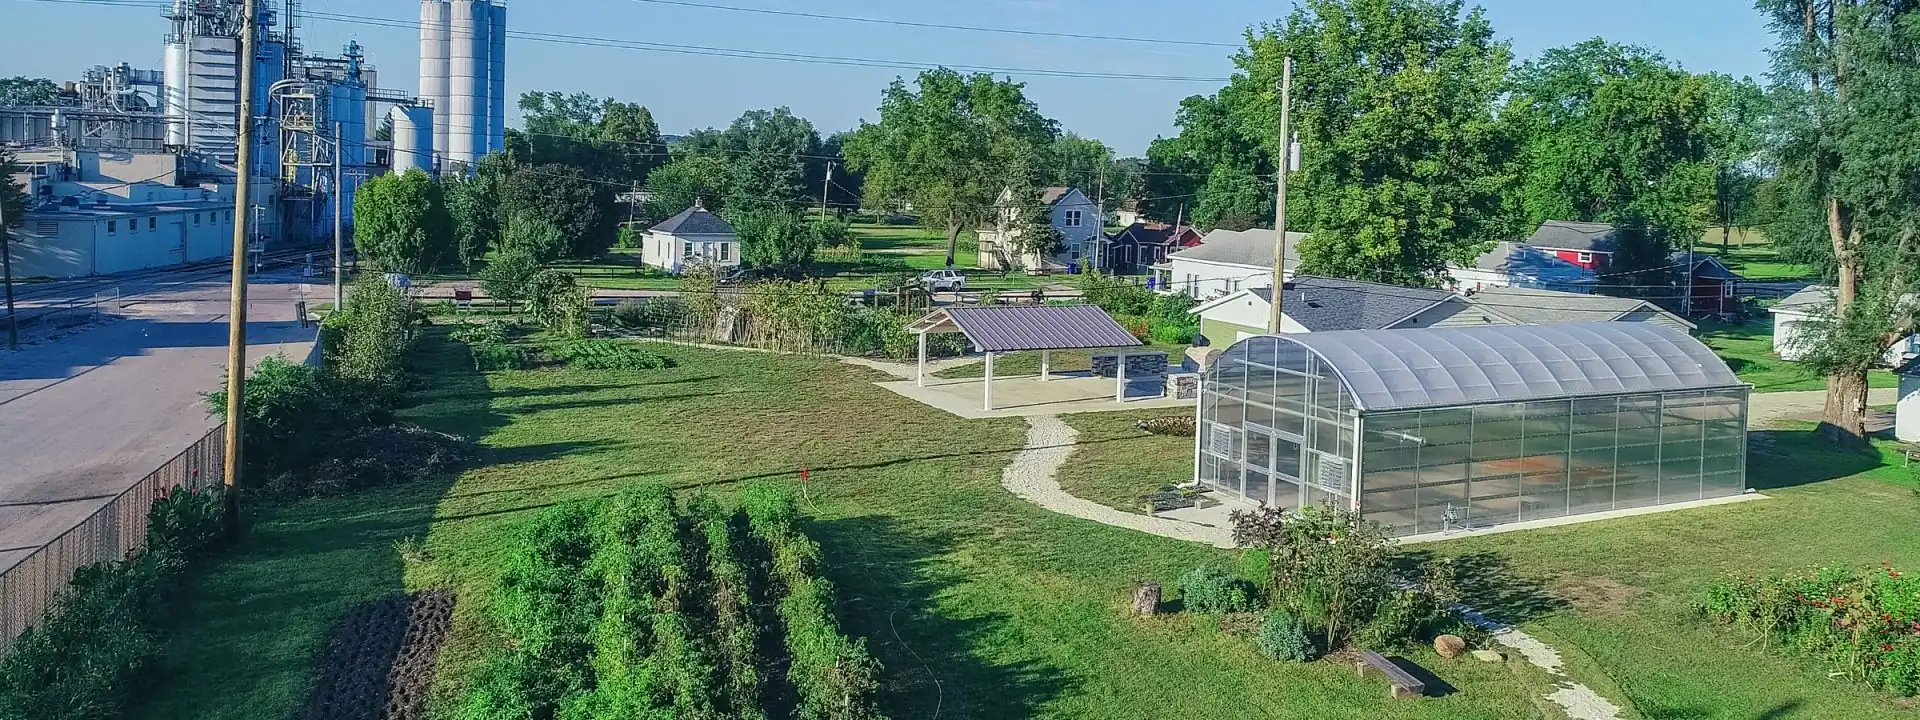 Cultivate Hope Urban Farm